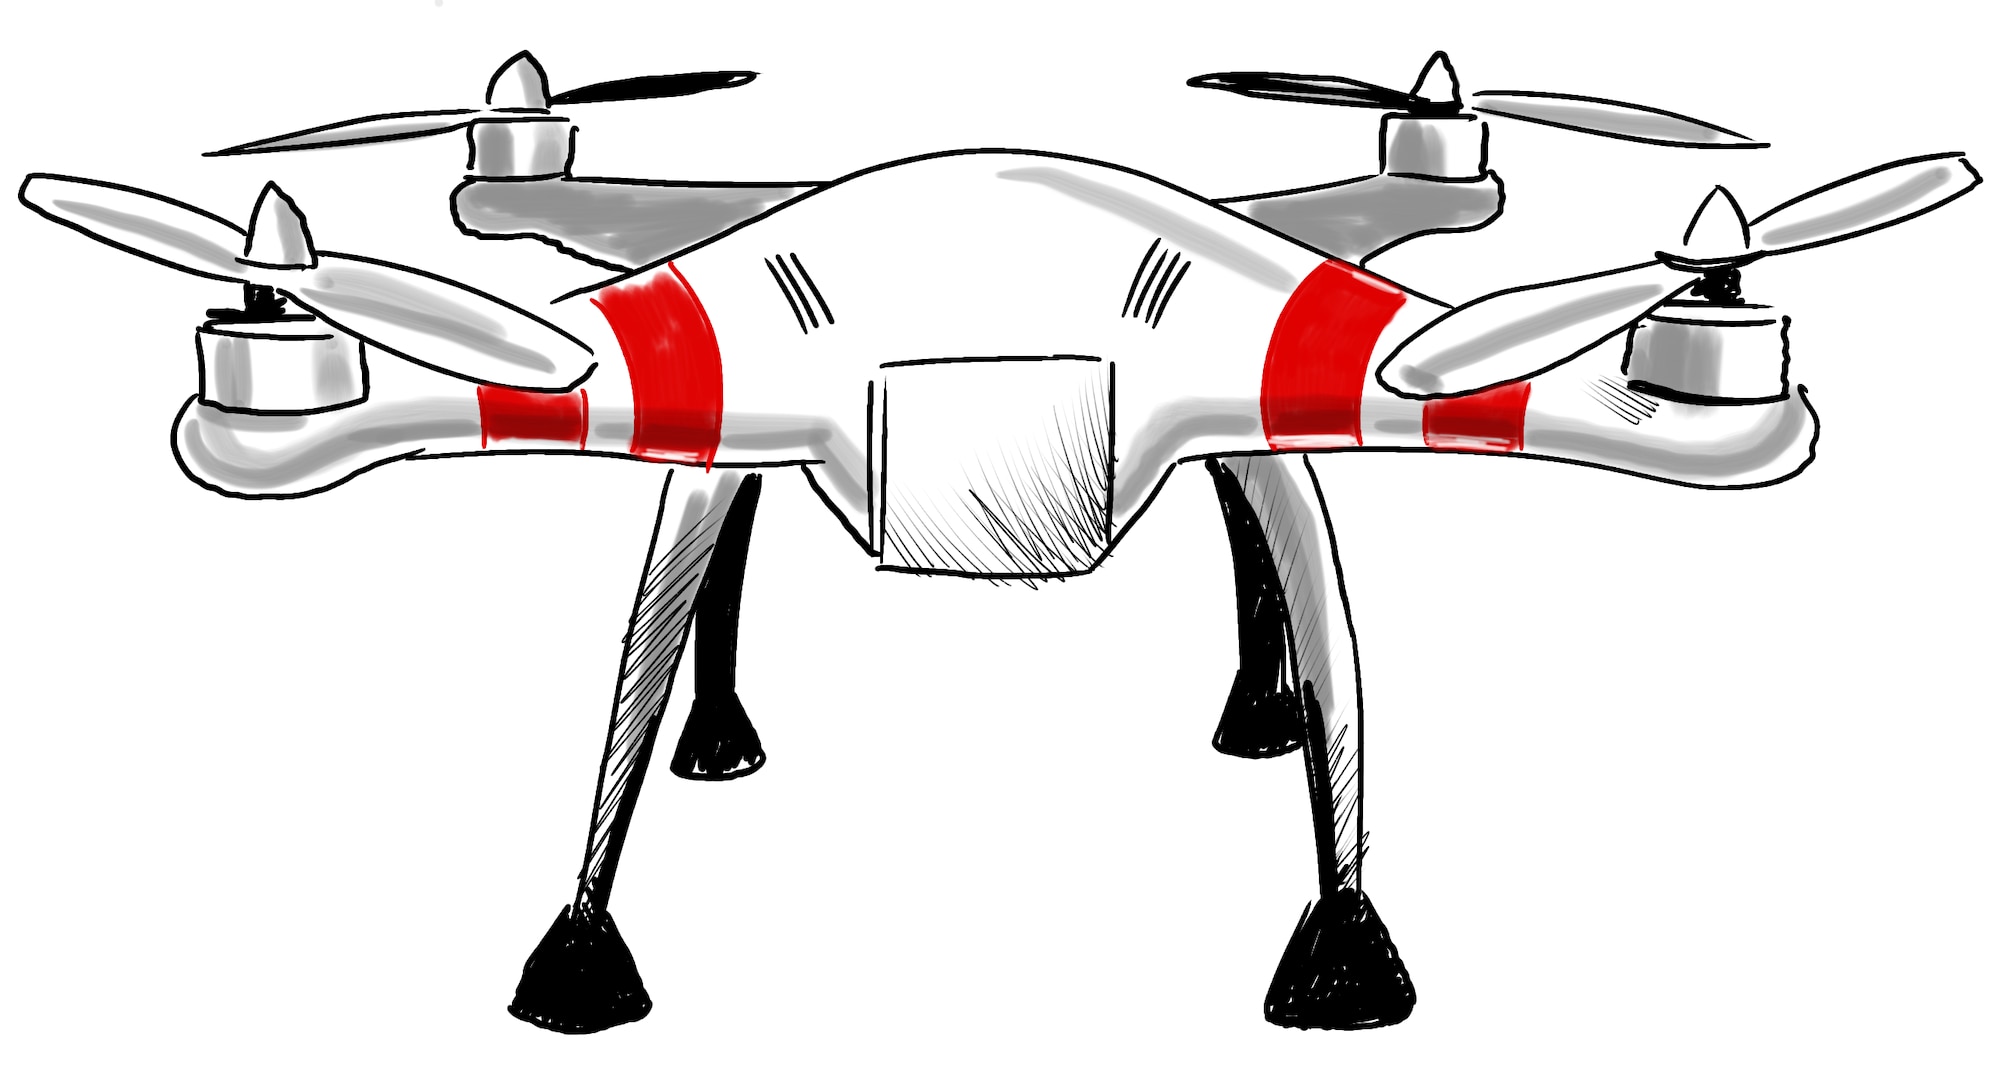 Drone illustration